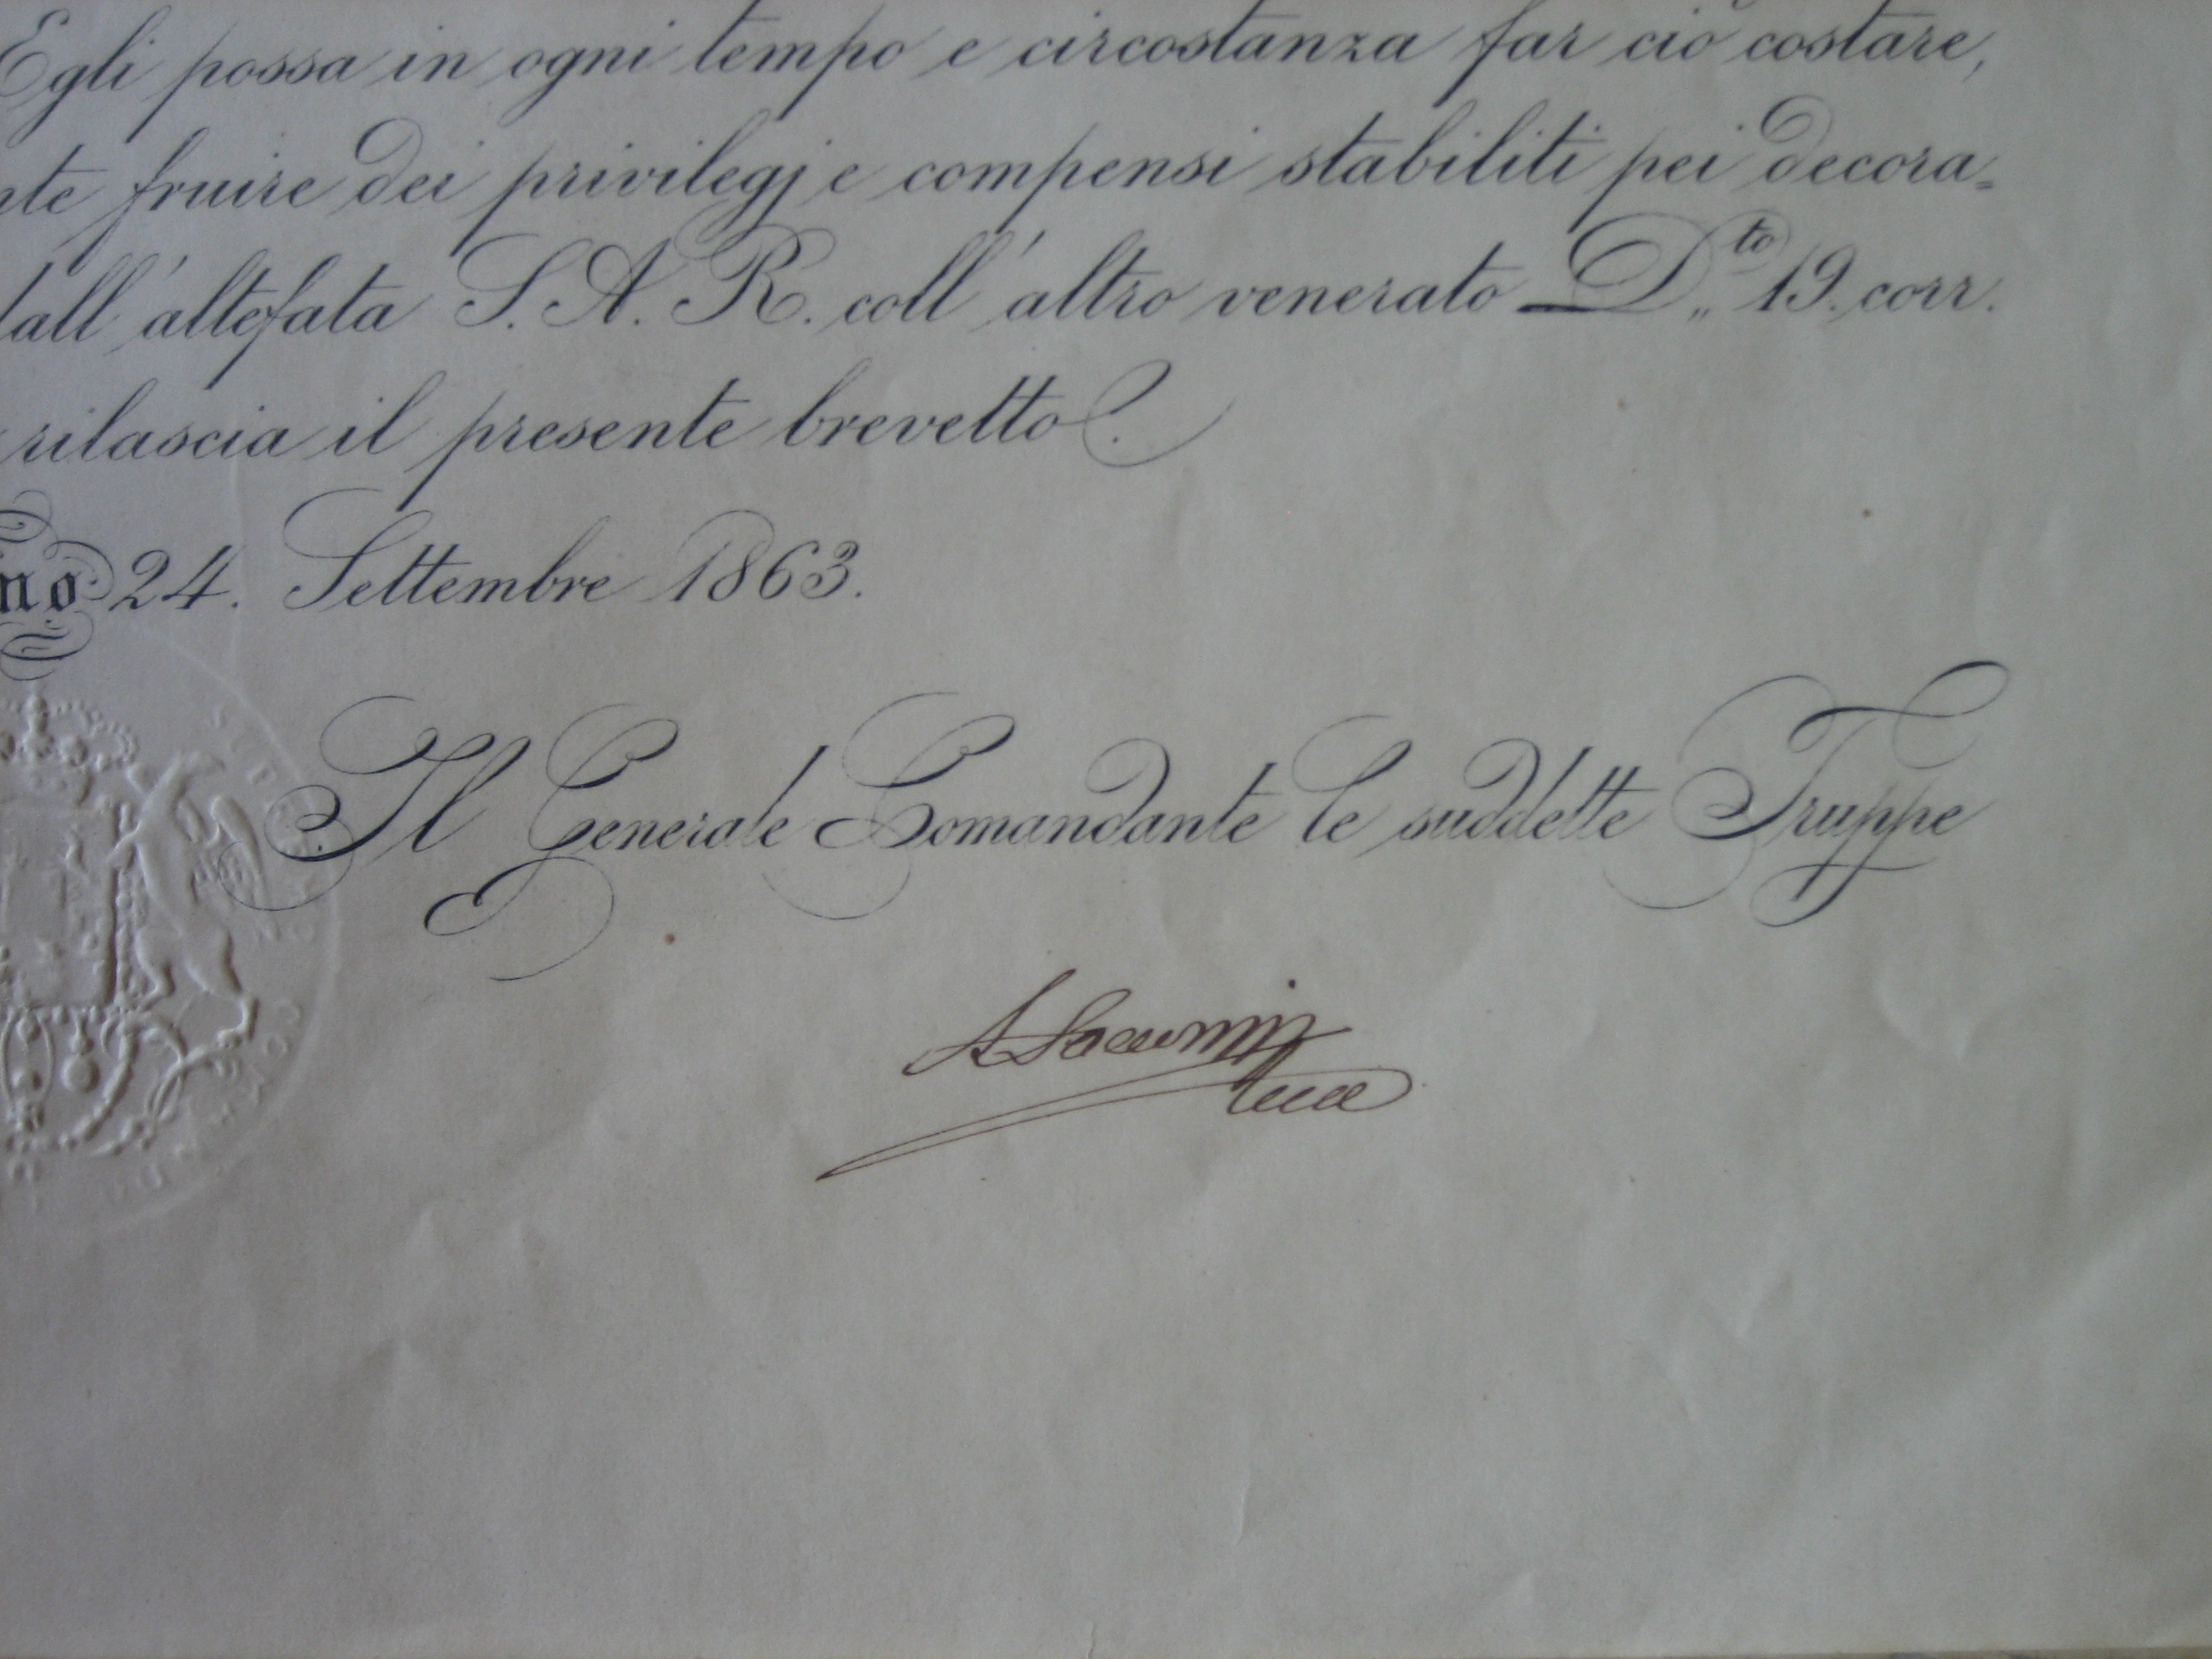 Diploma della medaglia dell'emigrazione, commemorativa dello scioglimento della Brigata Estense. Ogni singolo documento venne firmato dal generale Saccozzi (Archivio di Stato di Modena, Archivio delle Brigata Estense, b. 47).